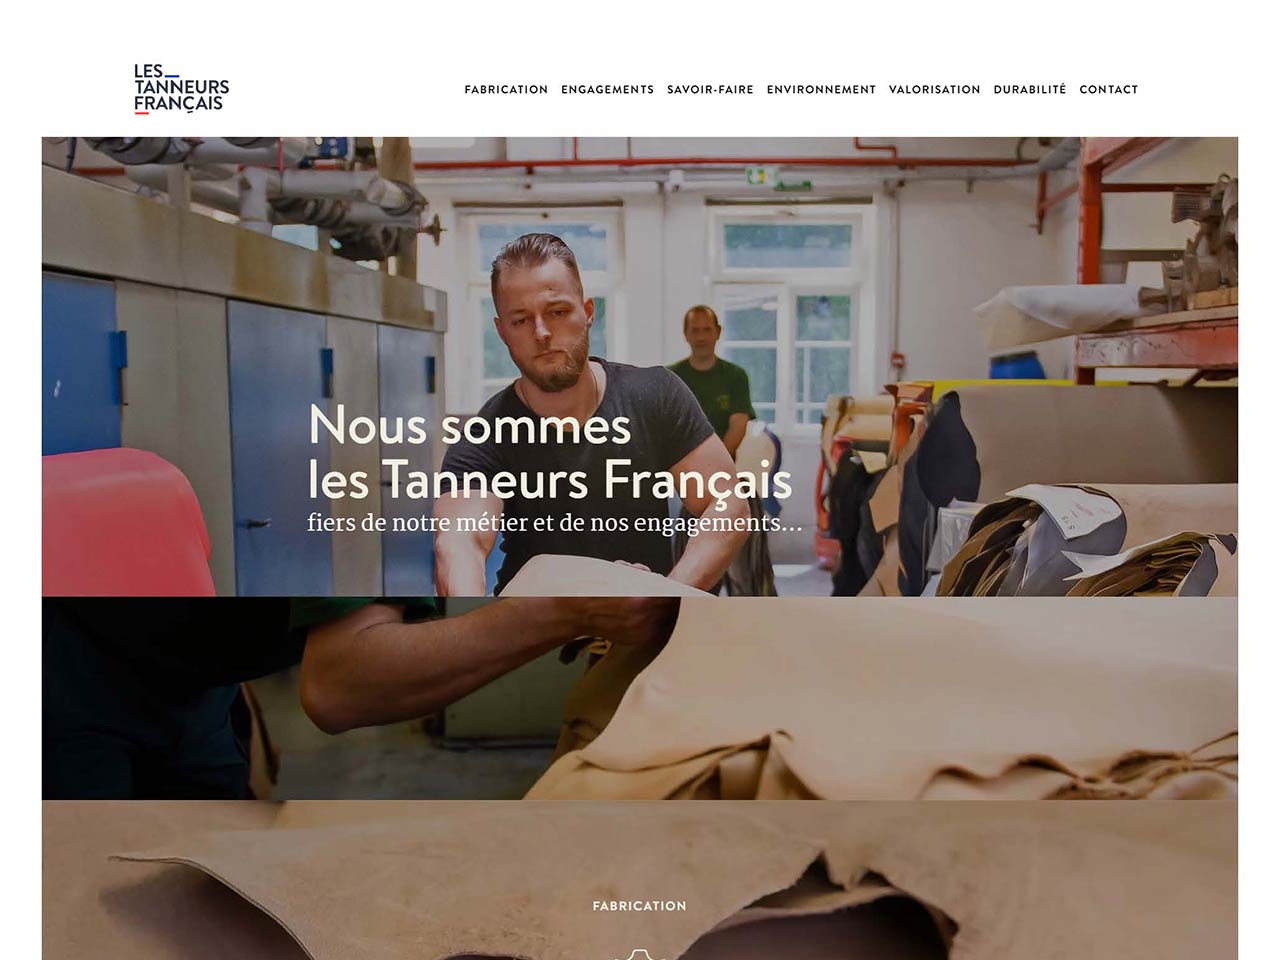 « Les Tanneurs Français », nouveau site grand public de la FFTM - Leather Fashion Design (LFD)